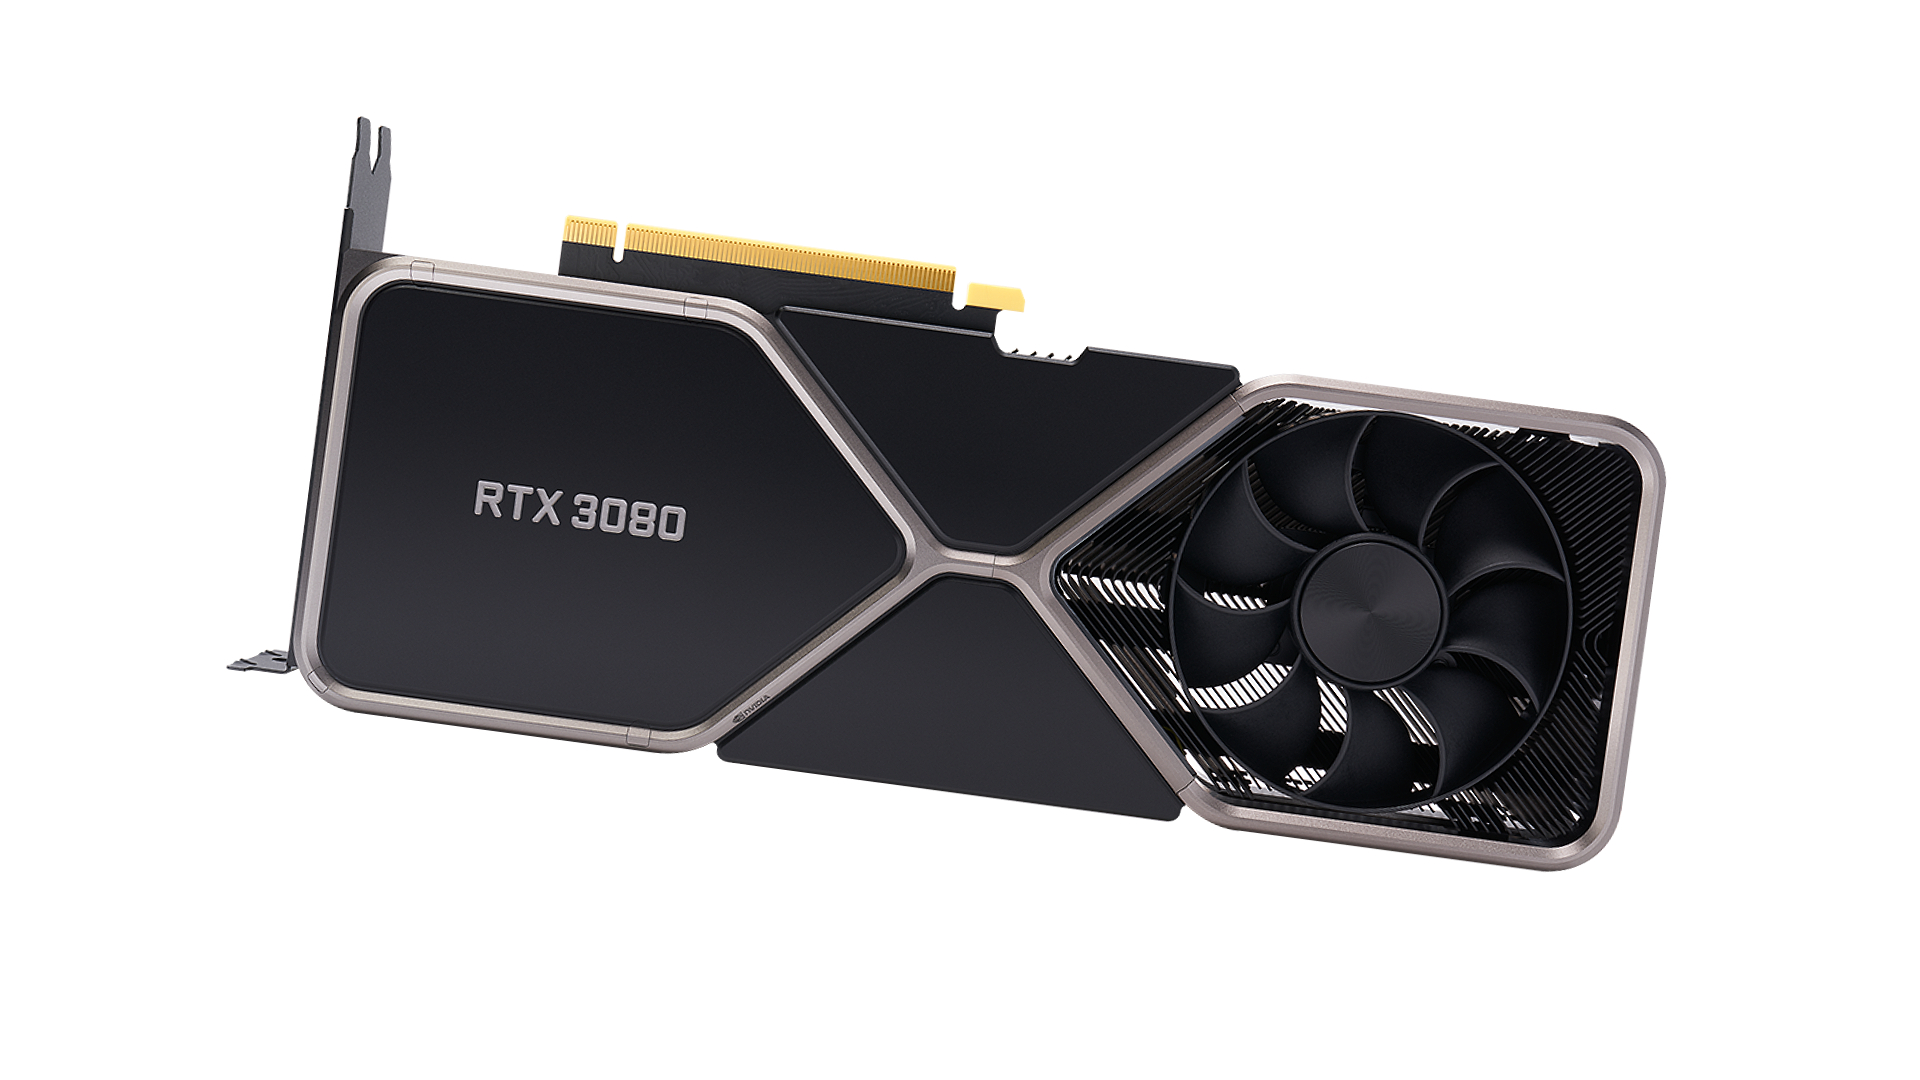 լավագույն գրաֆիկական քարտ՝ Nvidia RTX 3080 սպիտակ ֆոնի վրա